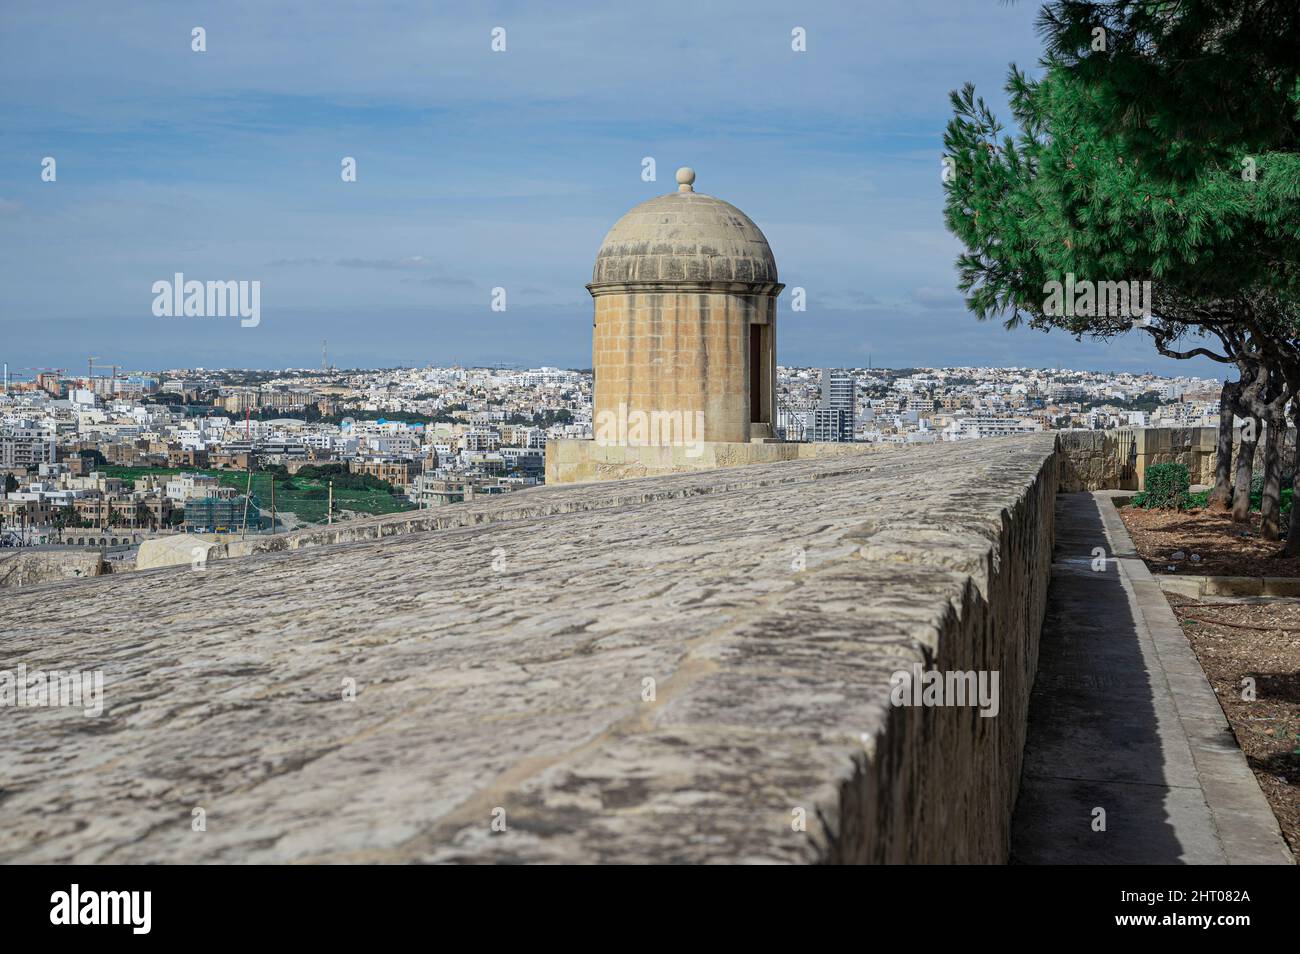 Gun turret on old city walls in Valletta, Malta Stock Photo